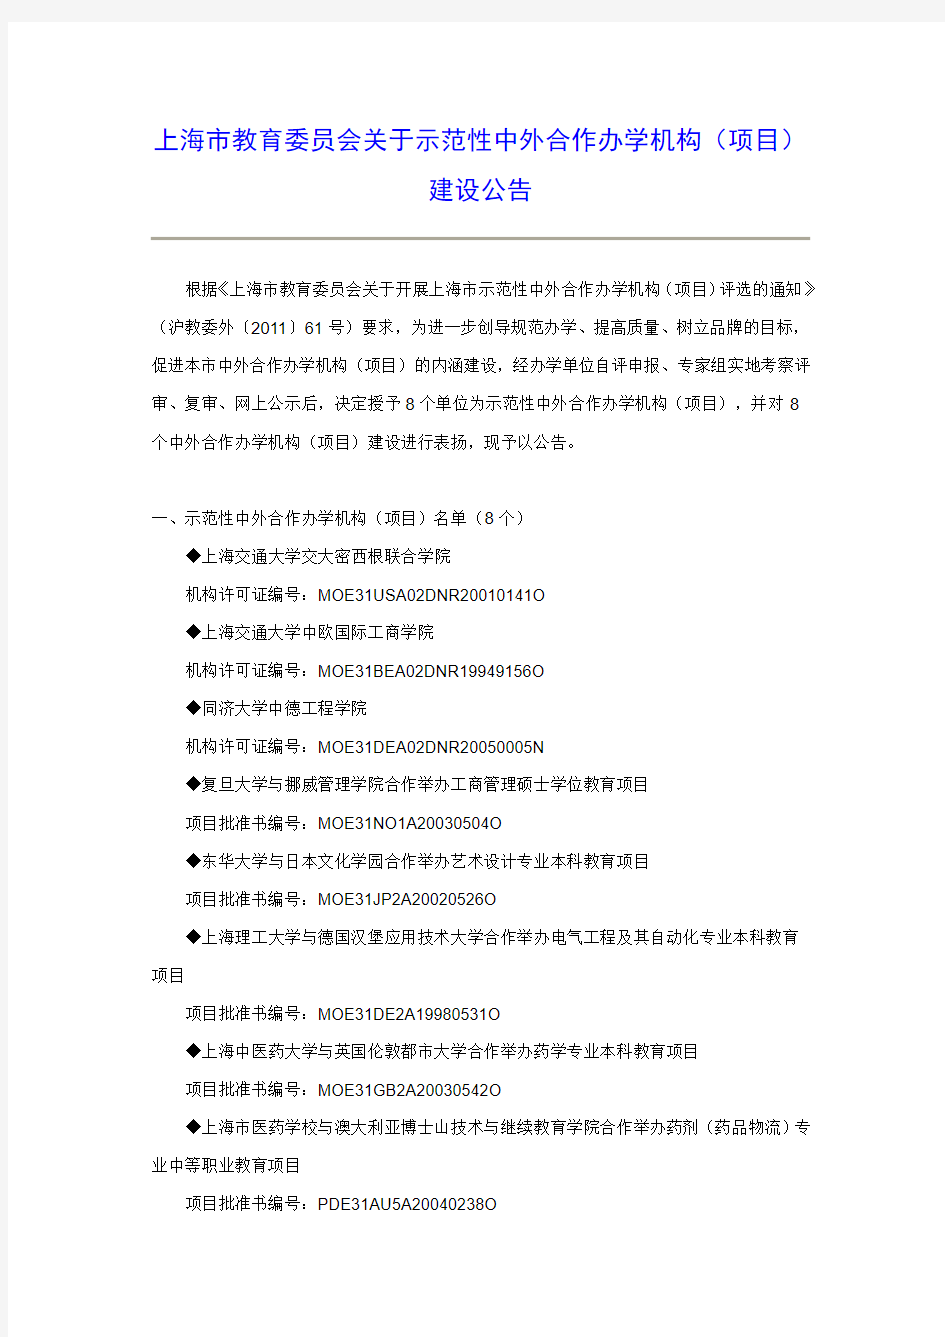 上海市教育委员会关于示范性中外合作办学机构(项目)建设公告